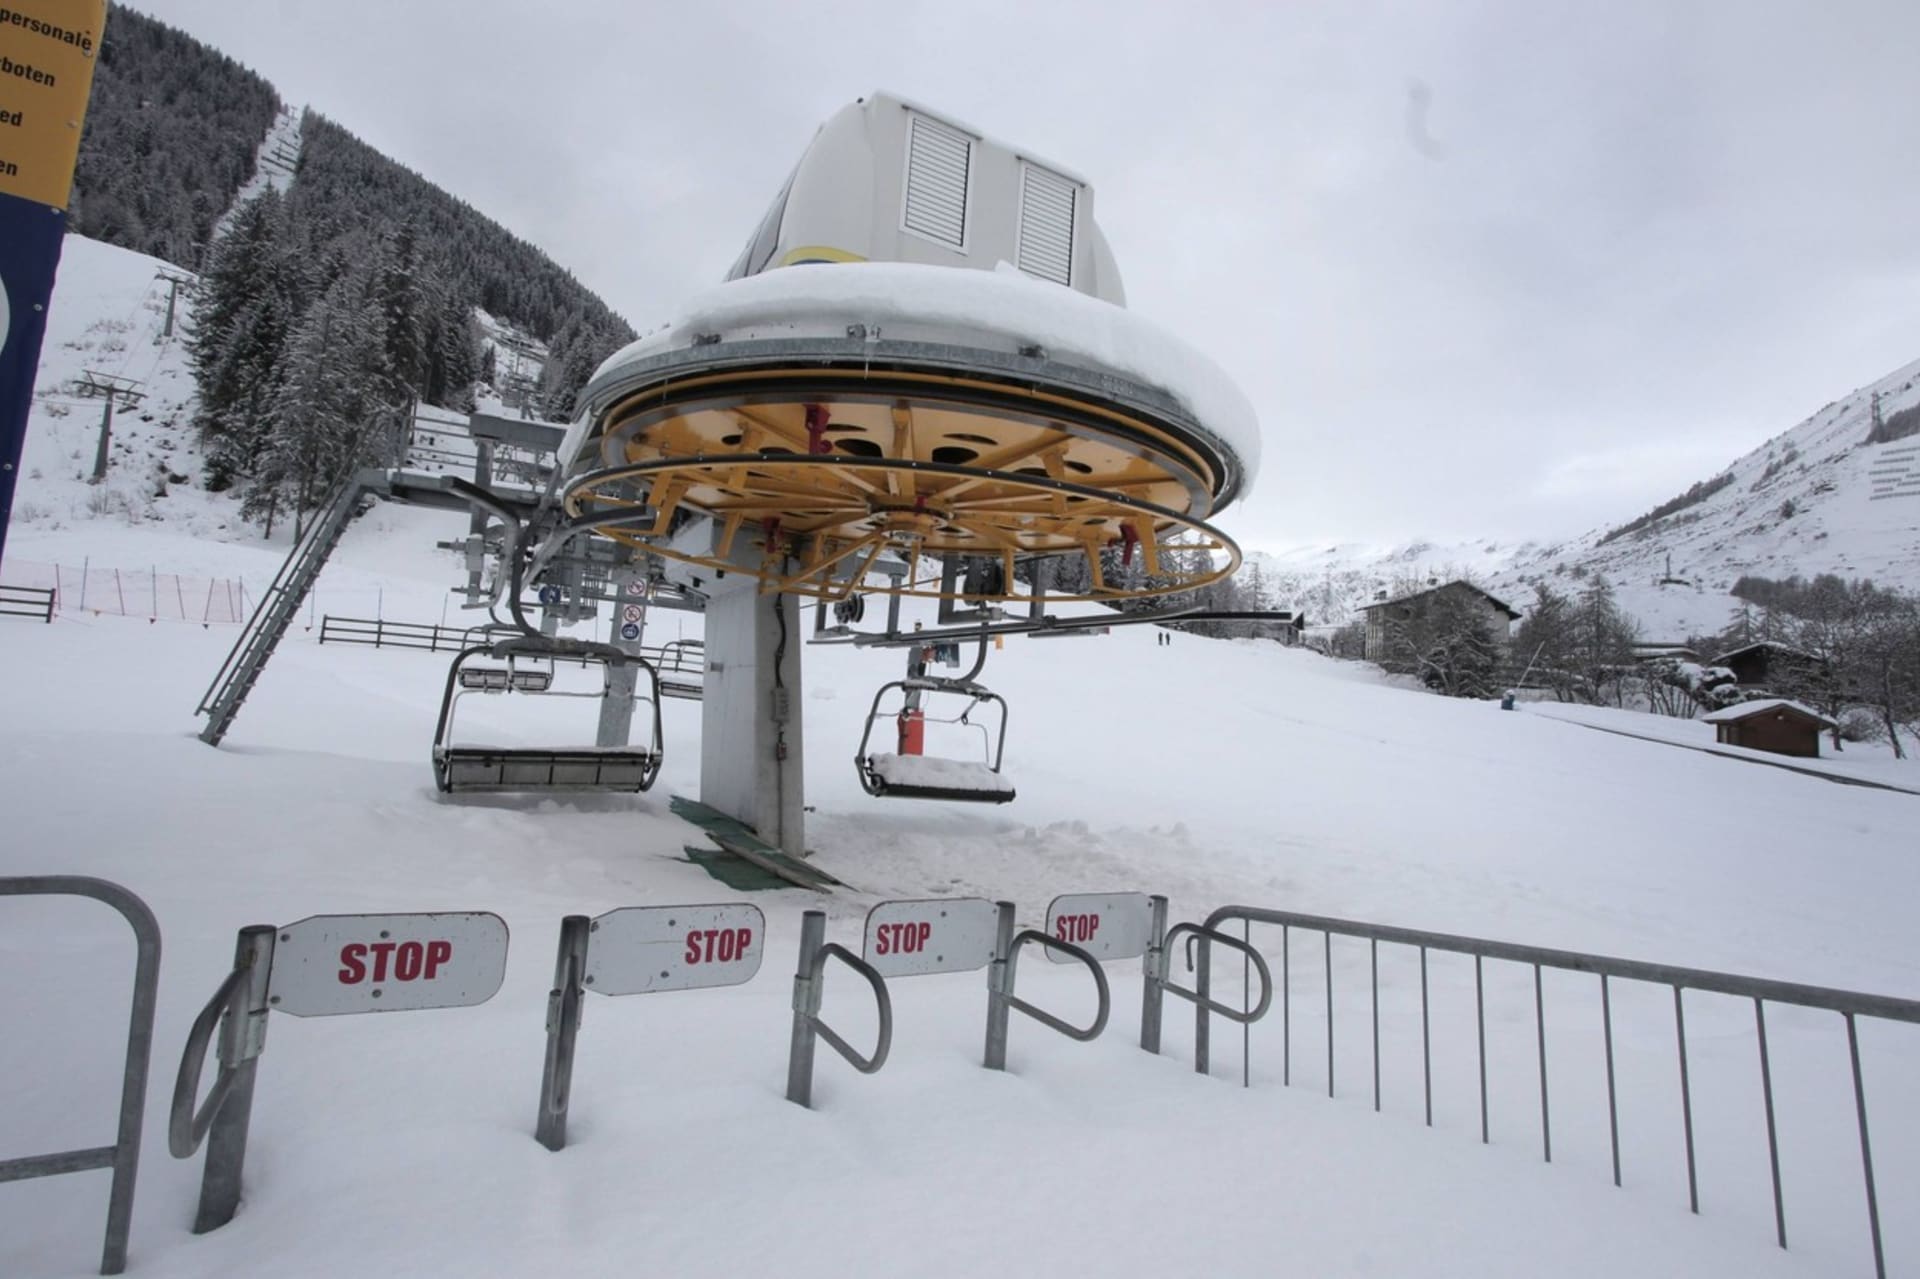 V pondělí se nerozjede ani středisko Valle d'Aosta